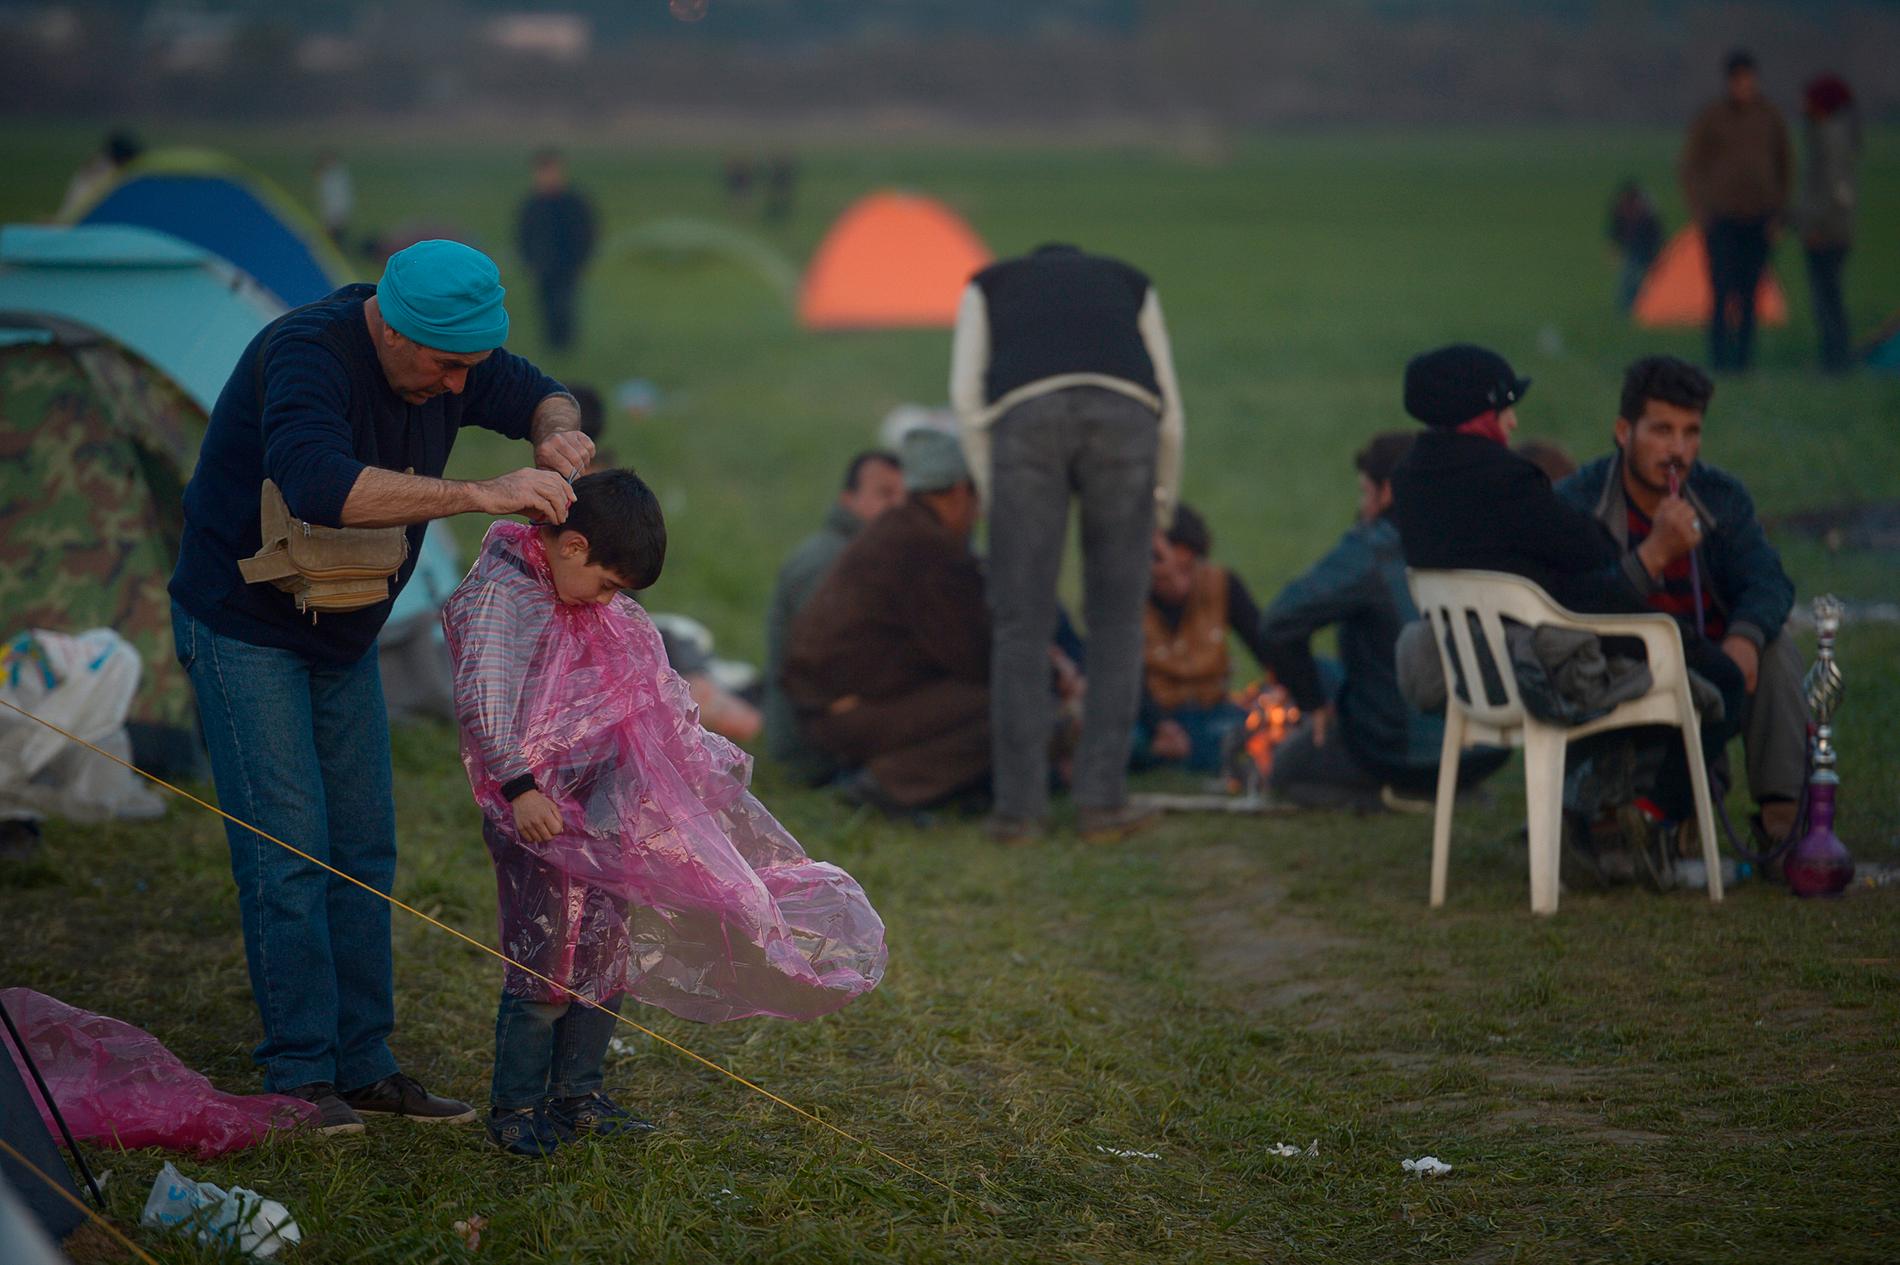 Det är dags att gå och lägga sig i flyktinglägret vid gränsen mellan Grekland och Makedonien. Efter att solen försvunnit bakom bergen tar det bara en halv timme till det att det är helt mörkt i lägret. Man släpar sina nyinköpta tält och sätter upp dem på någon av åkrarna vid gränsen. Man eldar kvistar, grenar och skräp för att hålla värmen.